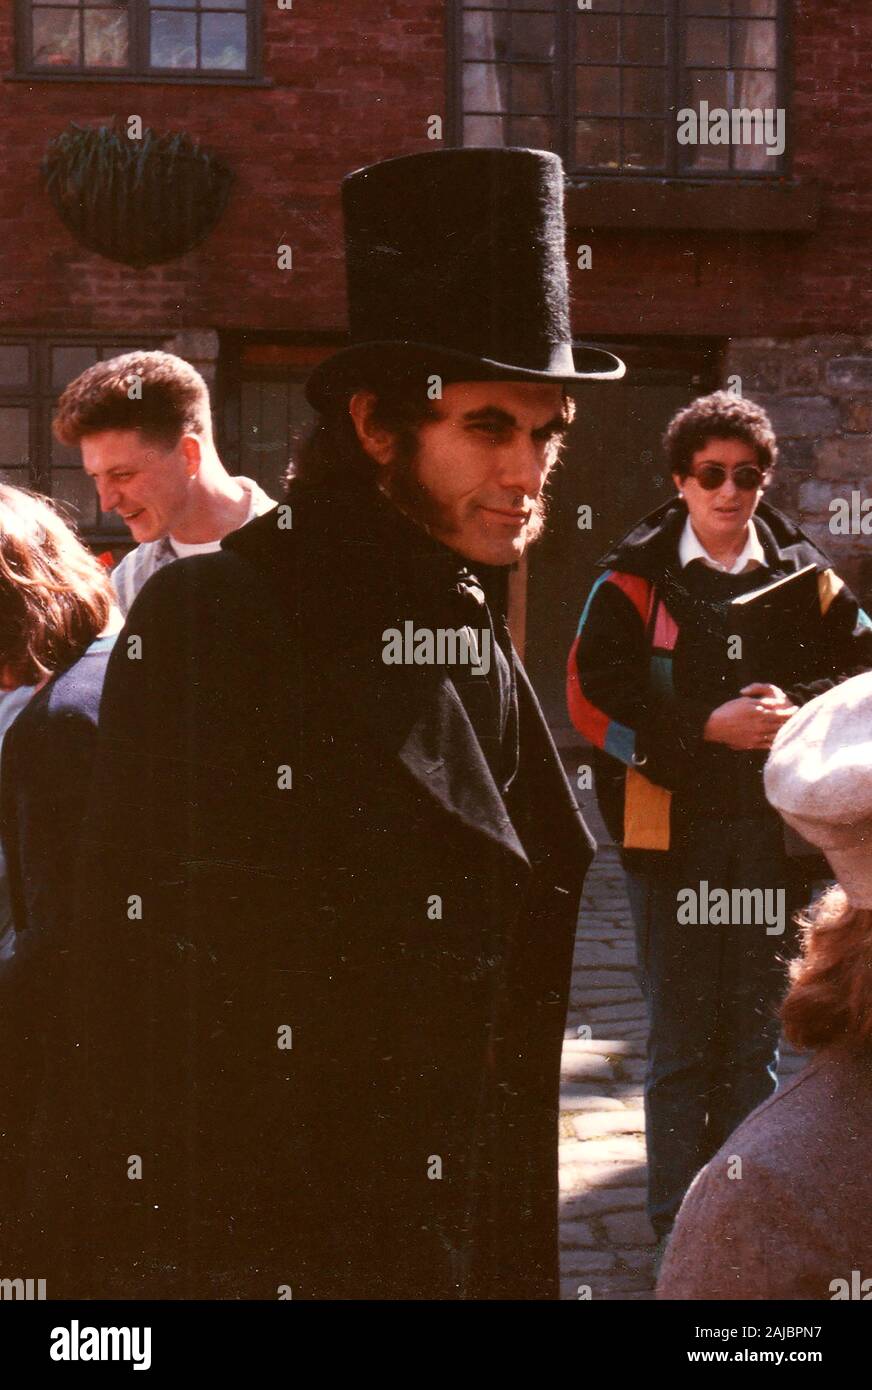 1986 - Hinter den Kulissen Bild in der Verfilmung der BBC-Serie David Copperfield - In whitby, North Yorkshire - Juni 1986 (Formlose Schuß zwischen Scenes) Stockfoto